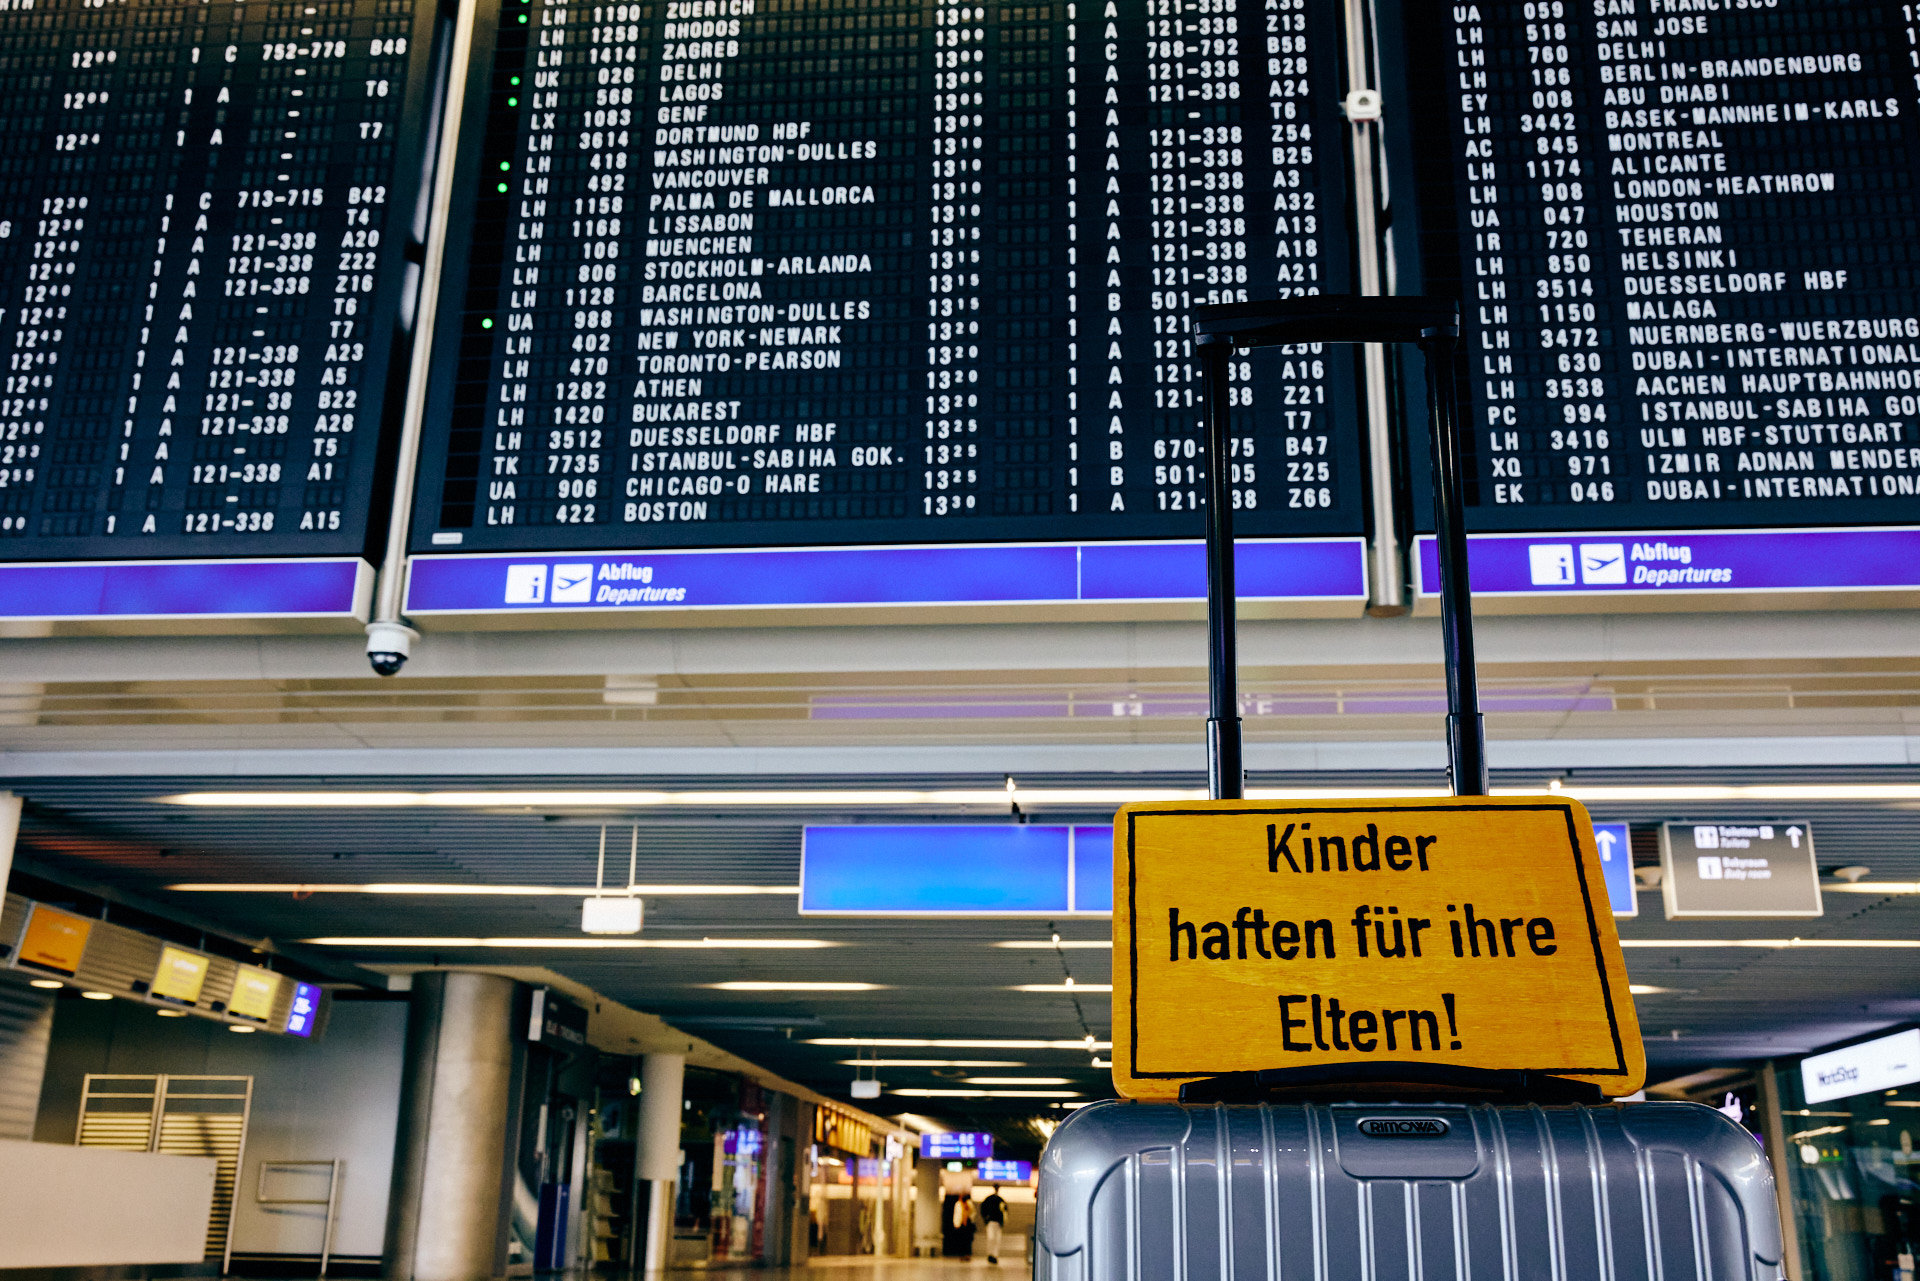 Abflugtafel FRA – Frankfurt Airport mit Schild „Kinder haften für ihre Eltern!“ (Foto: Niko Martin)